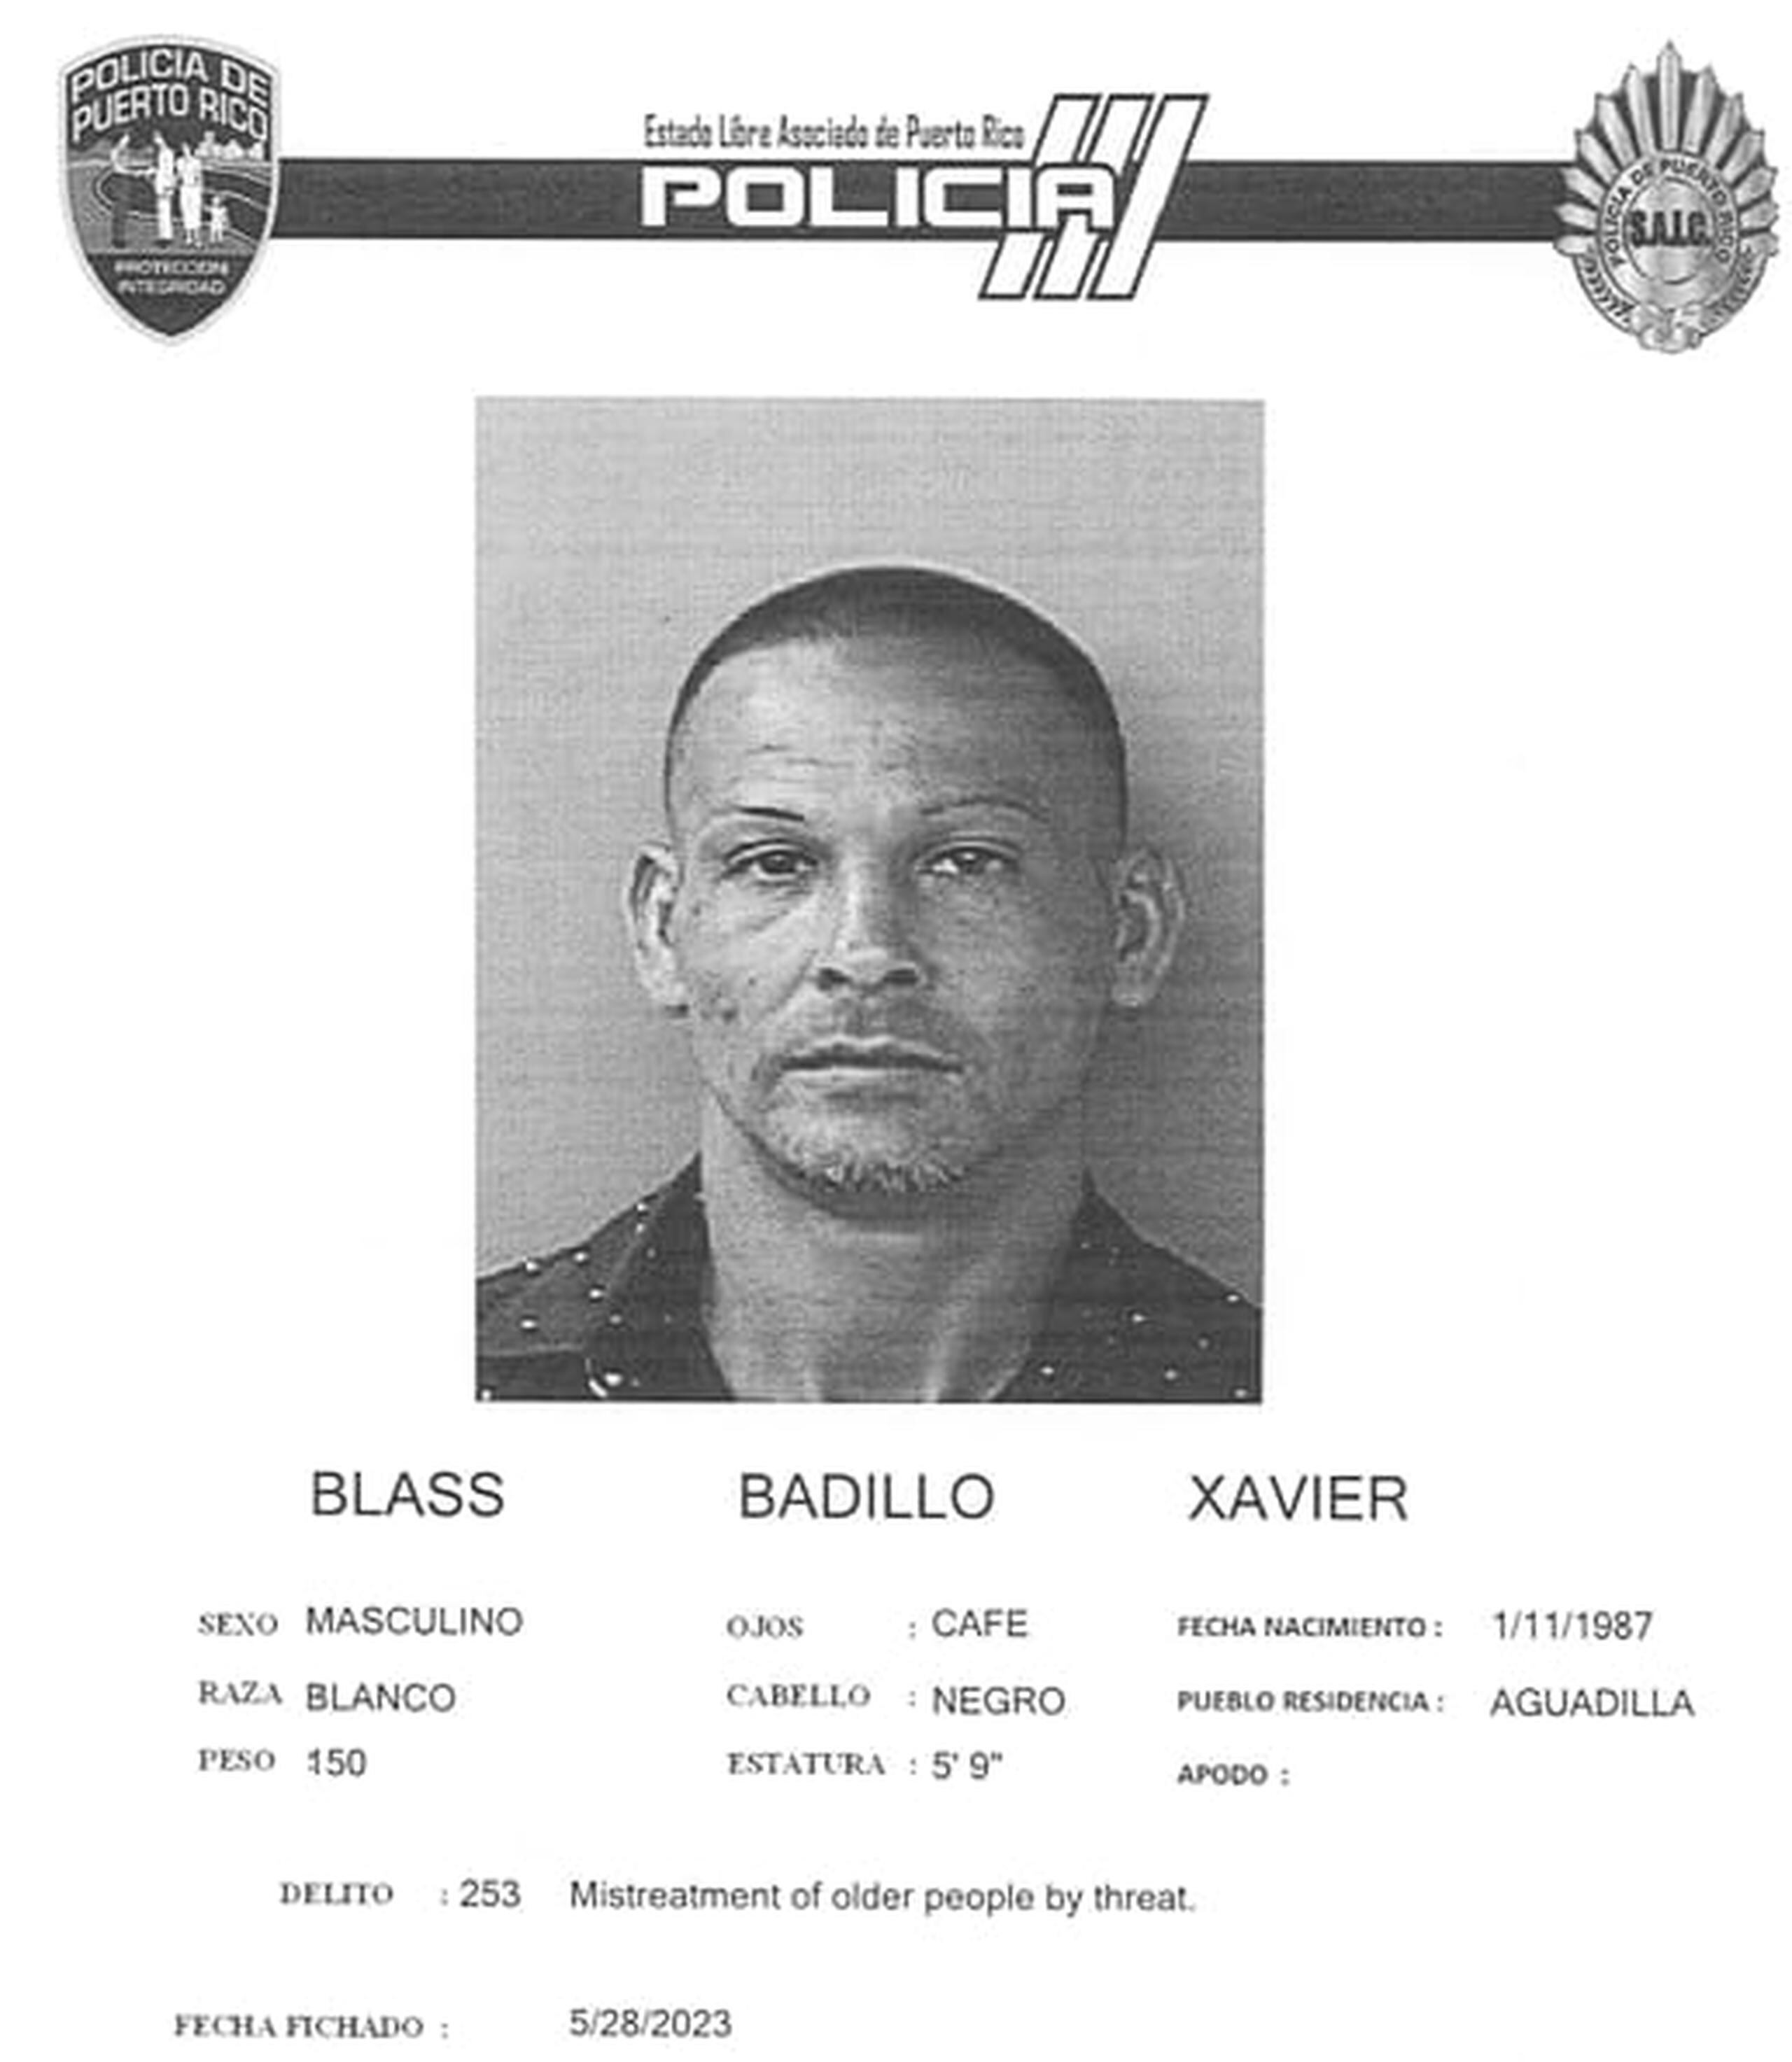 Xavier Blass Badillo enfrenta cargos por maltrato de personas de edad avanzada y amenaza.